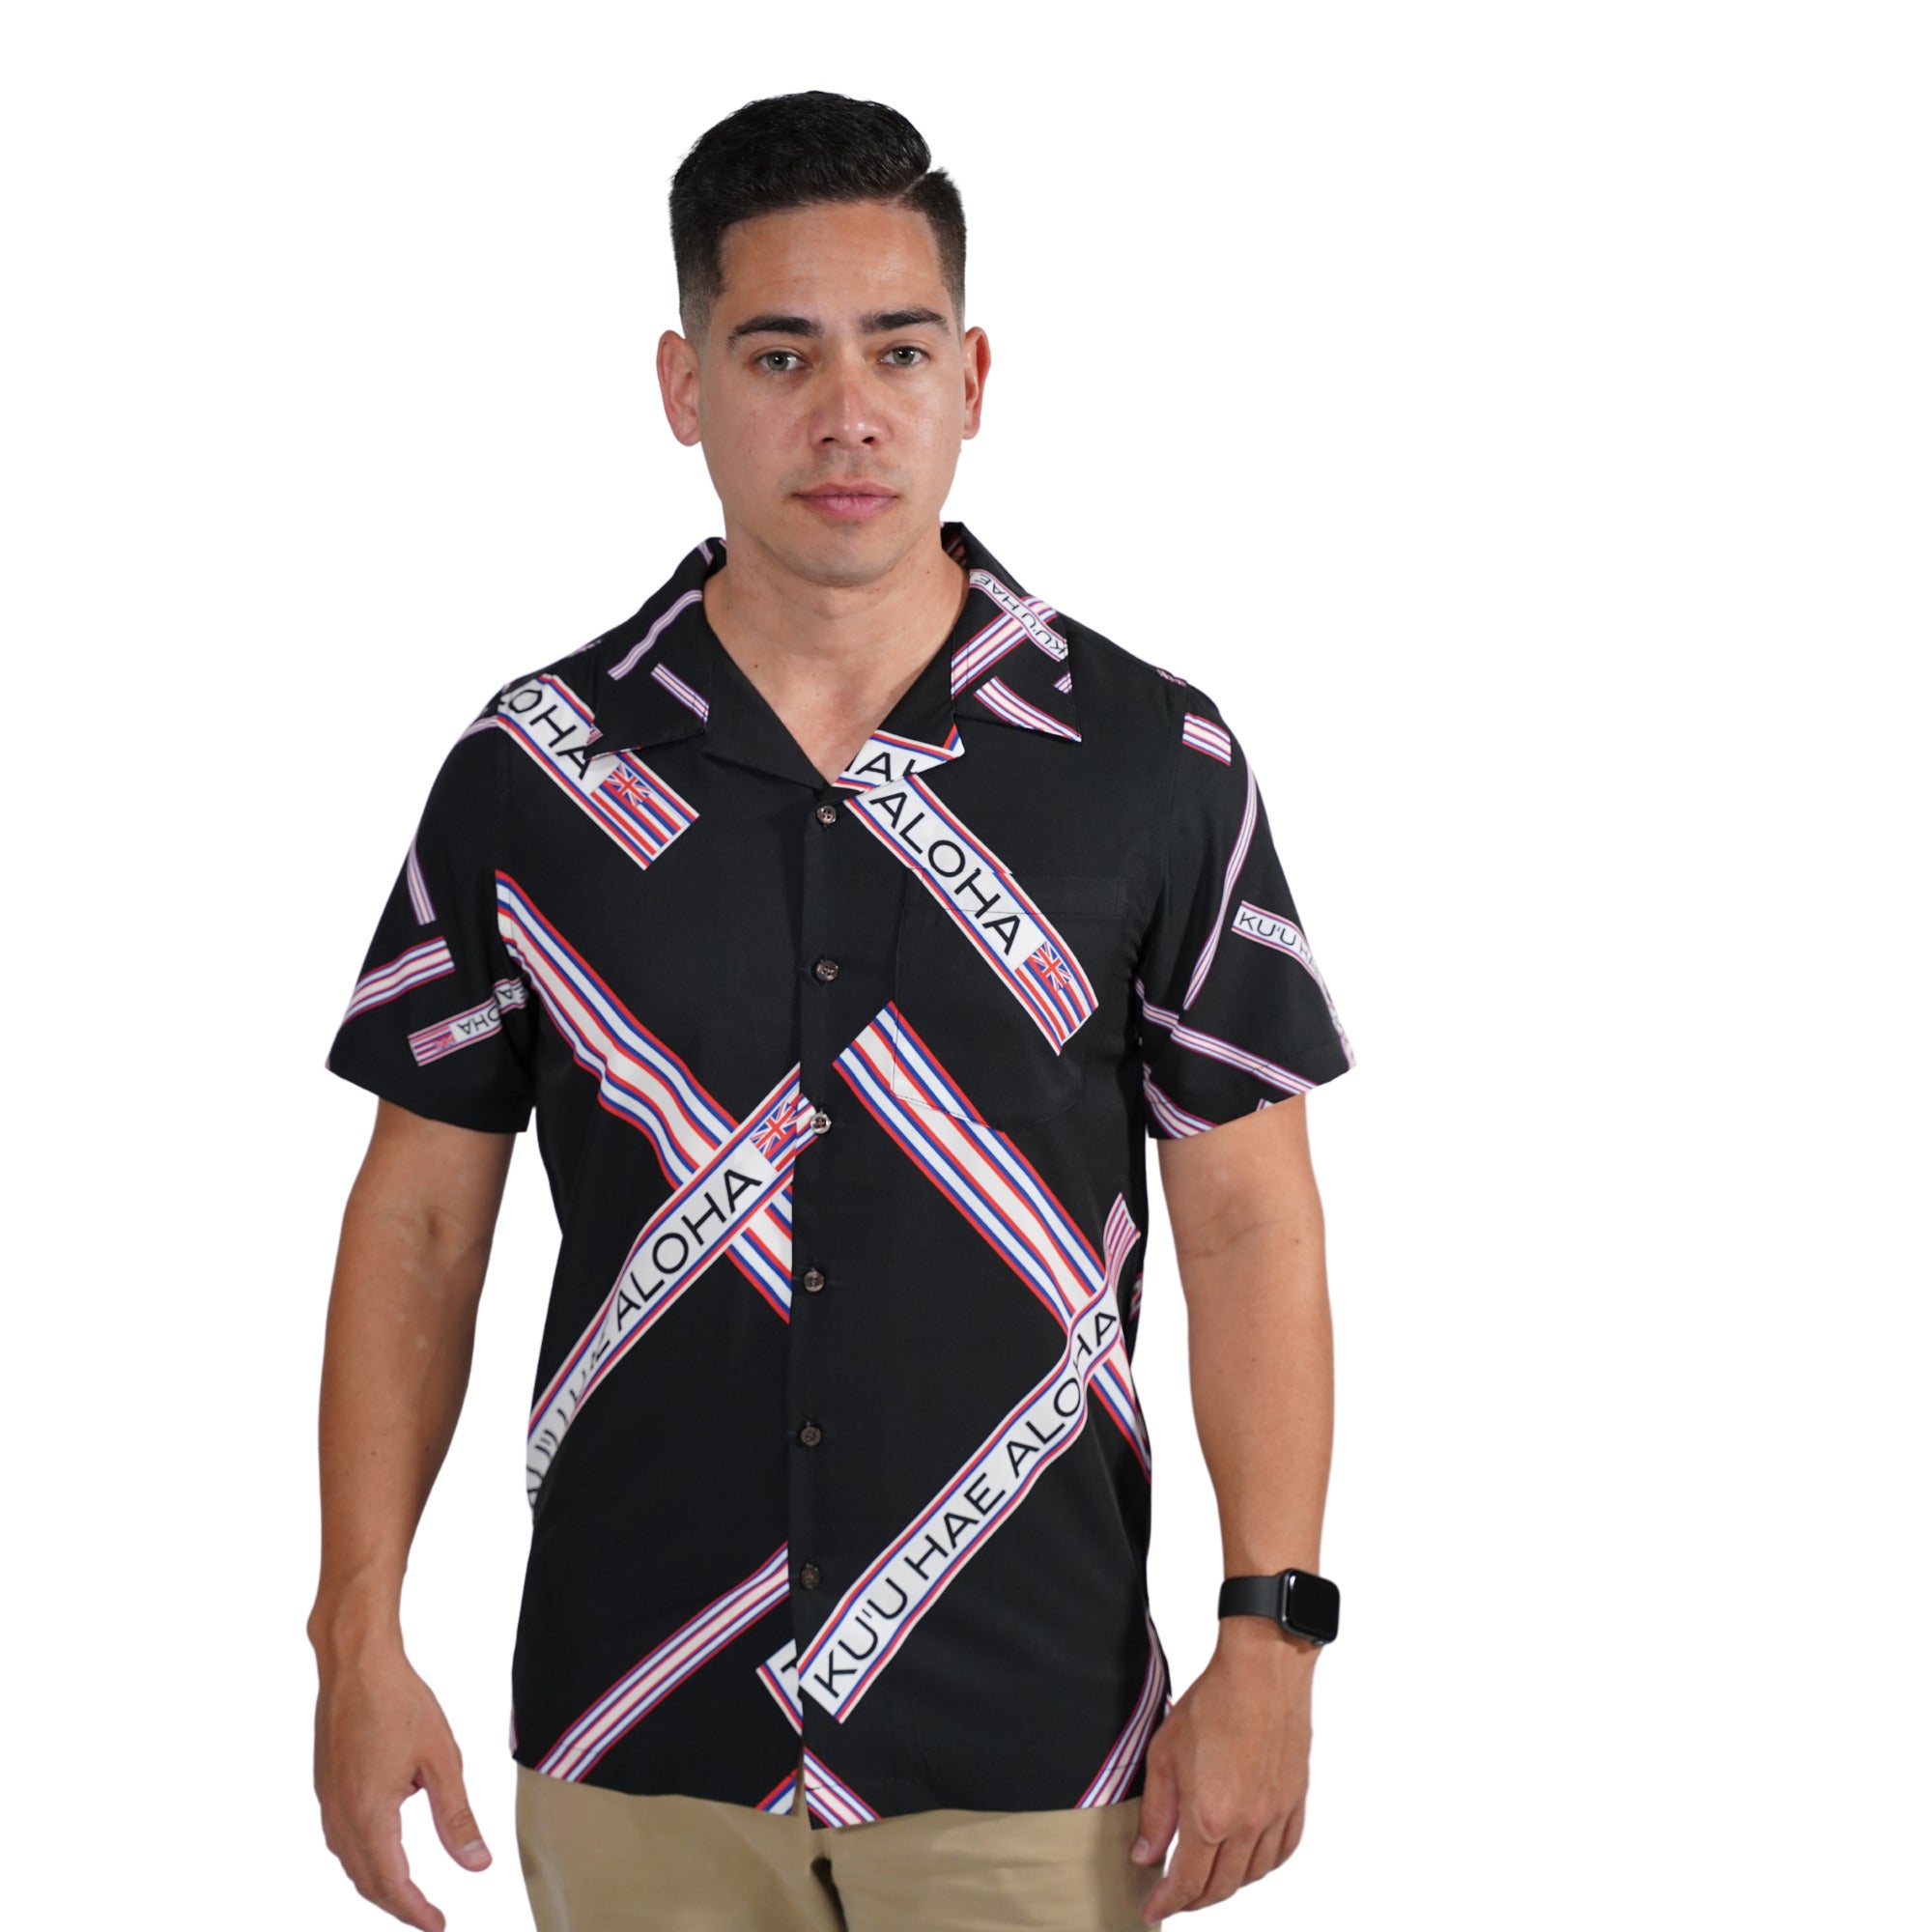 Pop-Up Mākeke - Kini Zamora - Kuʻu Hae Aloha Shirt with Pocket - Front View